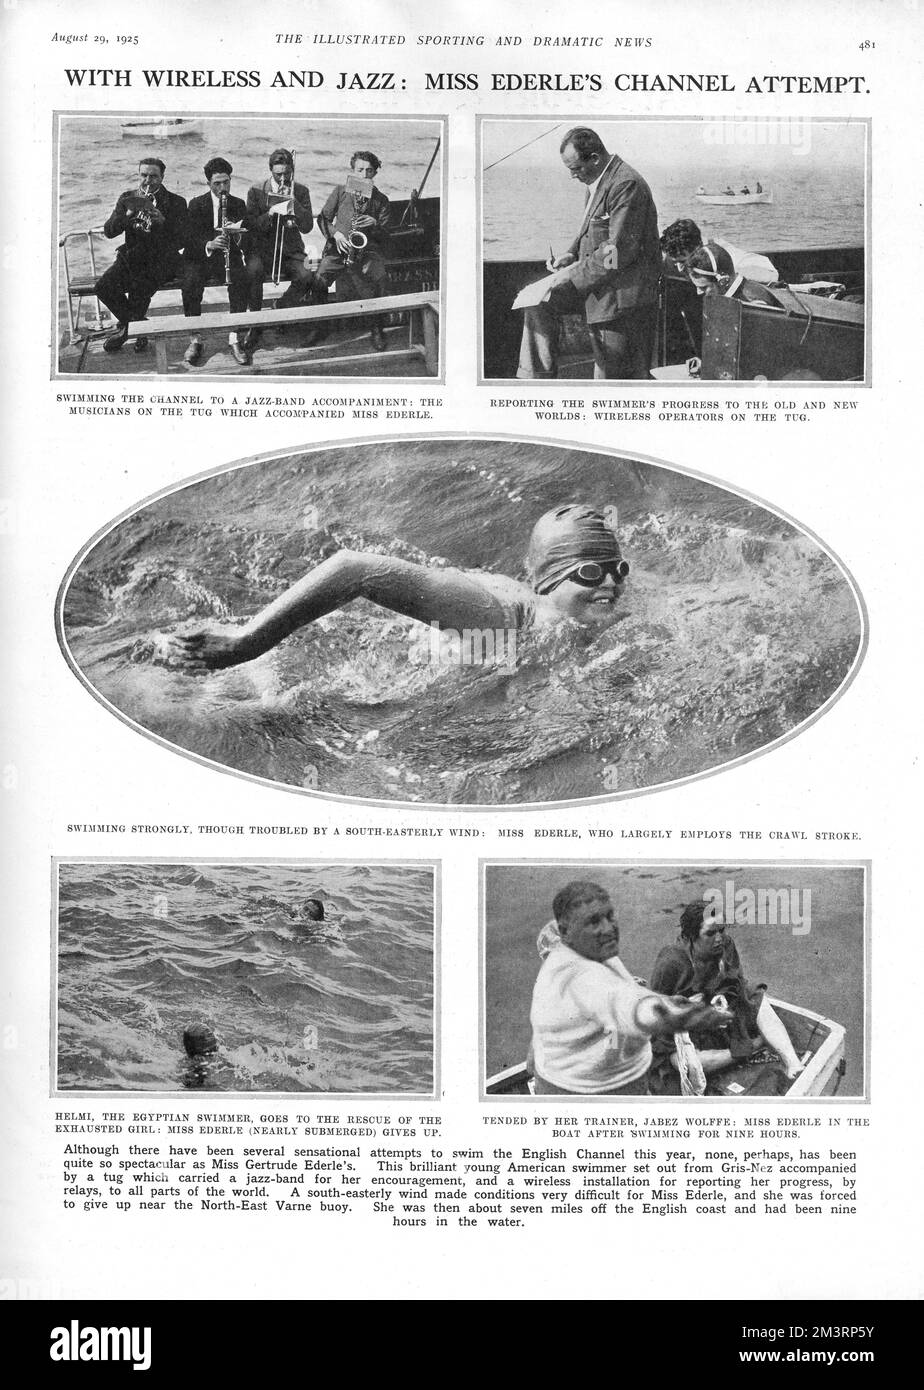 Gertrude Ederle, nageuse de compétition américaine, essayant de nager dans la chaîne britannique, qui était accompagnée non seulement par des opérateurs sans fil et son entraîneur, mais par un groupe de jazz pour le soutien motivationnel. Malheureusement, à cette occasion, le groupe de jazz n'a pas fonctionné et Gertrude a dû abandonner après neuf heures. Elle deviendrait la première femme à nager dans la Manche l'année suivante. 1925 Banque D'Images